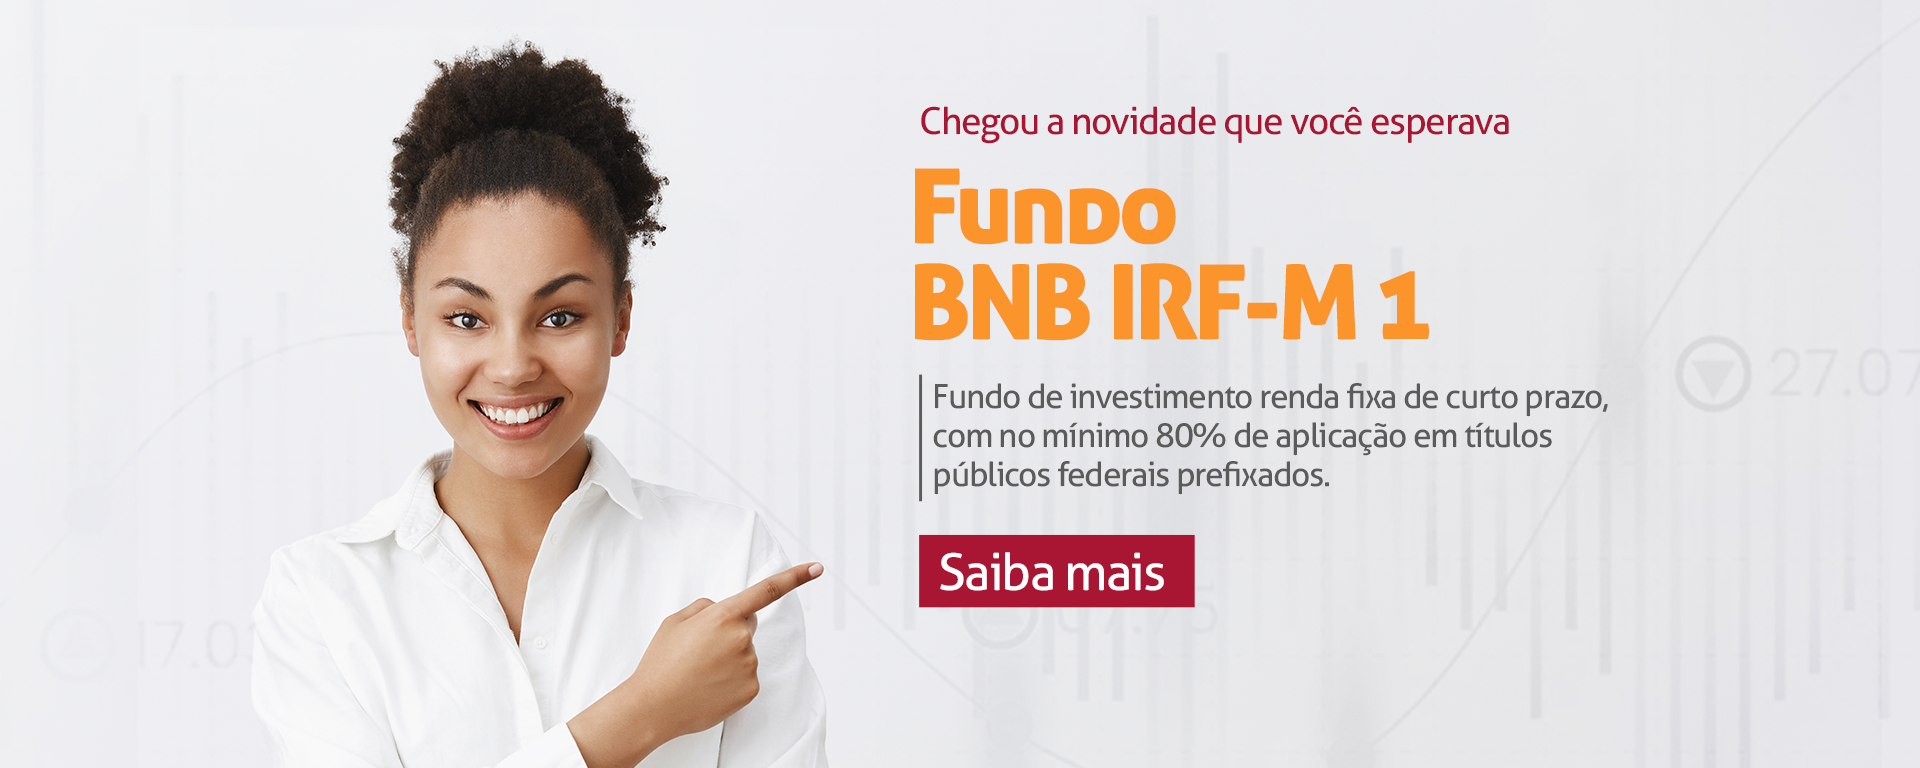 Texto na imagem: Chegou a novidade que você esperava, Fundo BNB IRF-M 1. Fundo de investimento renda fixa de curto prazo, com no mínimo 80% de aplicação em títulos públicos federais prefixados. Saiba mais. Link para a Página de Fundos de Investimento do Banco do Nordeste.